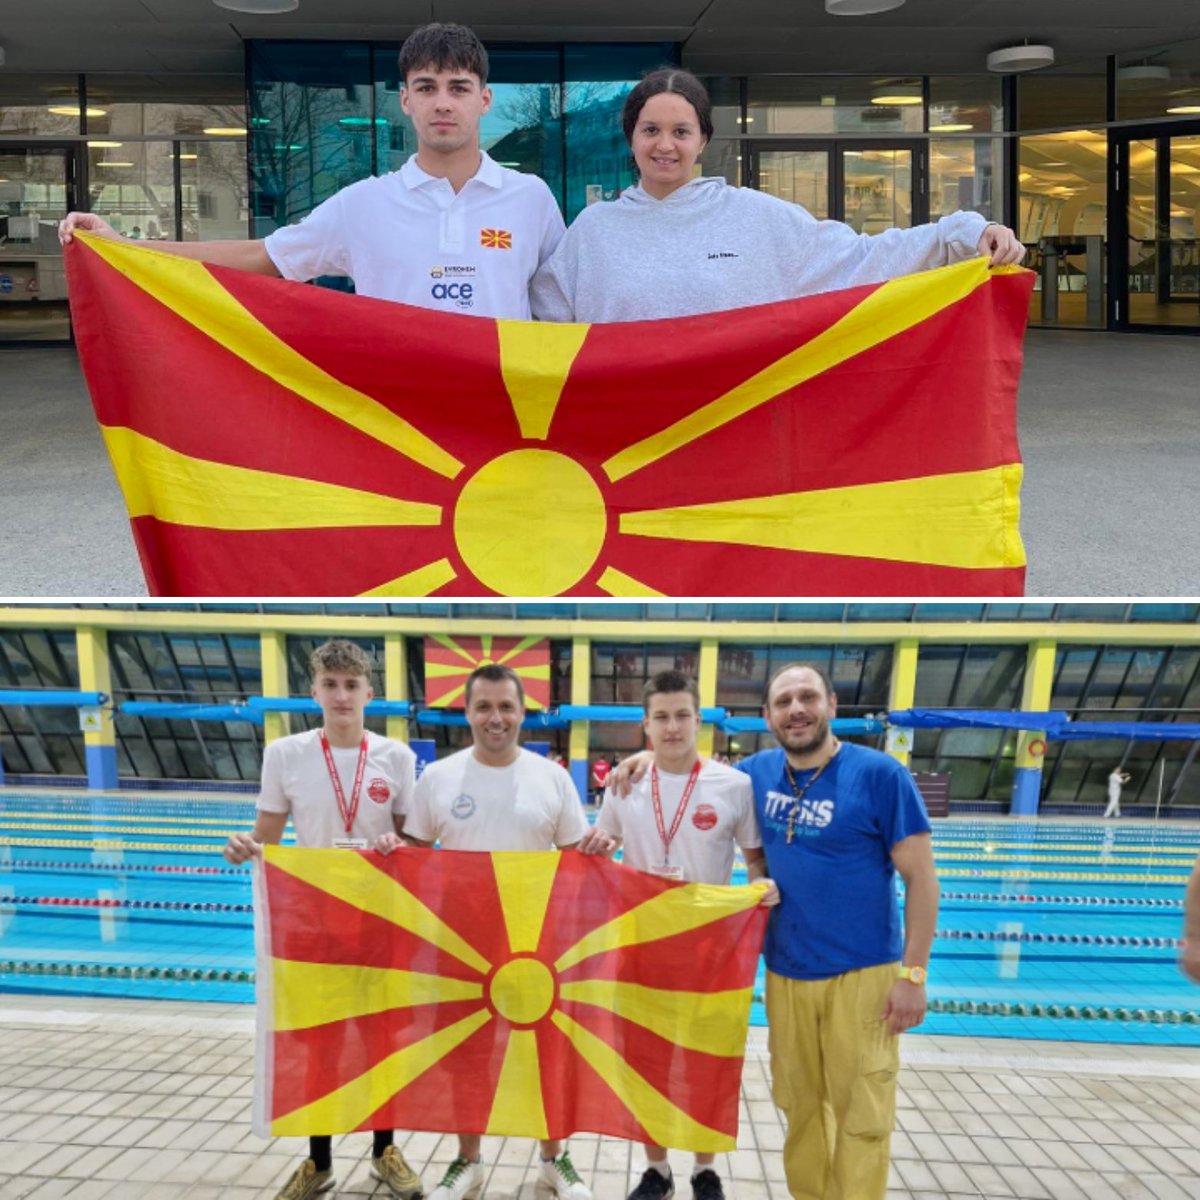 Нашите пливачи,како дел од Репрезентацијата на Македонија во исто време настапуваа на два натпревари.🏊🇲🇰
Исидора и Огнен во Грац,додека Давид и Василиј во Скопје.🤩🫶
Браво ПЛИВАЧИШТА💪💪💪
.
.
.
#HWAPO #GoOrion